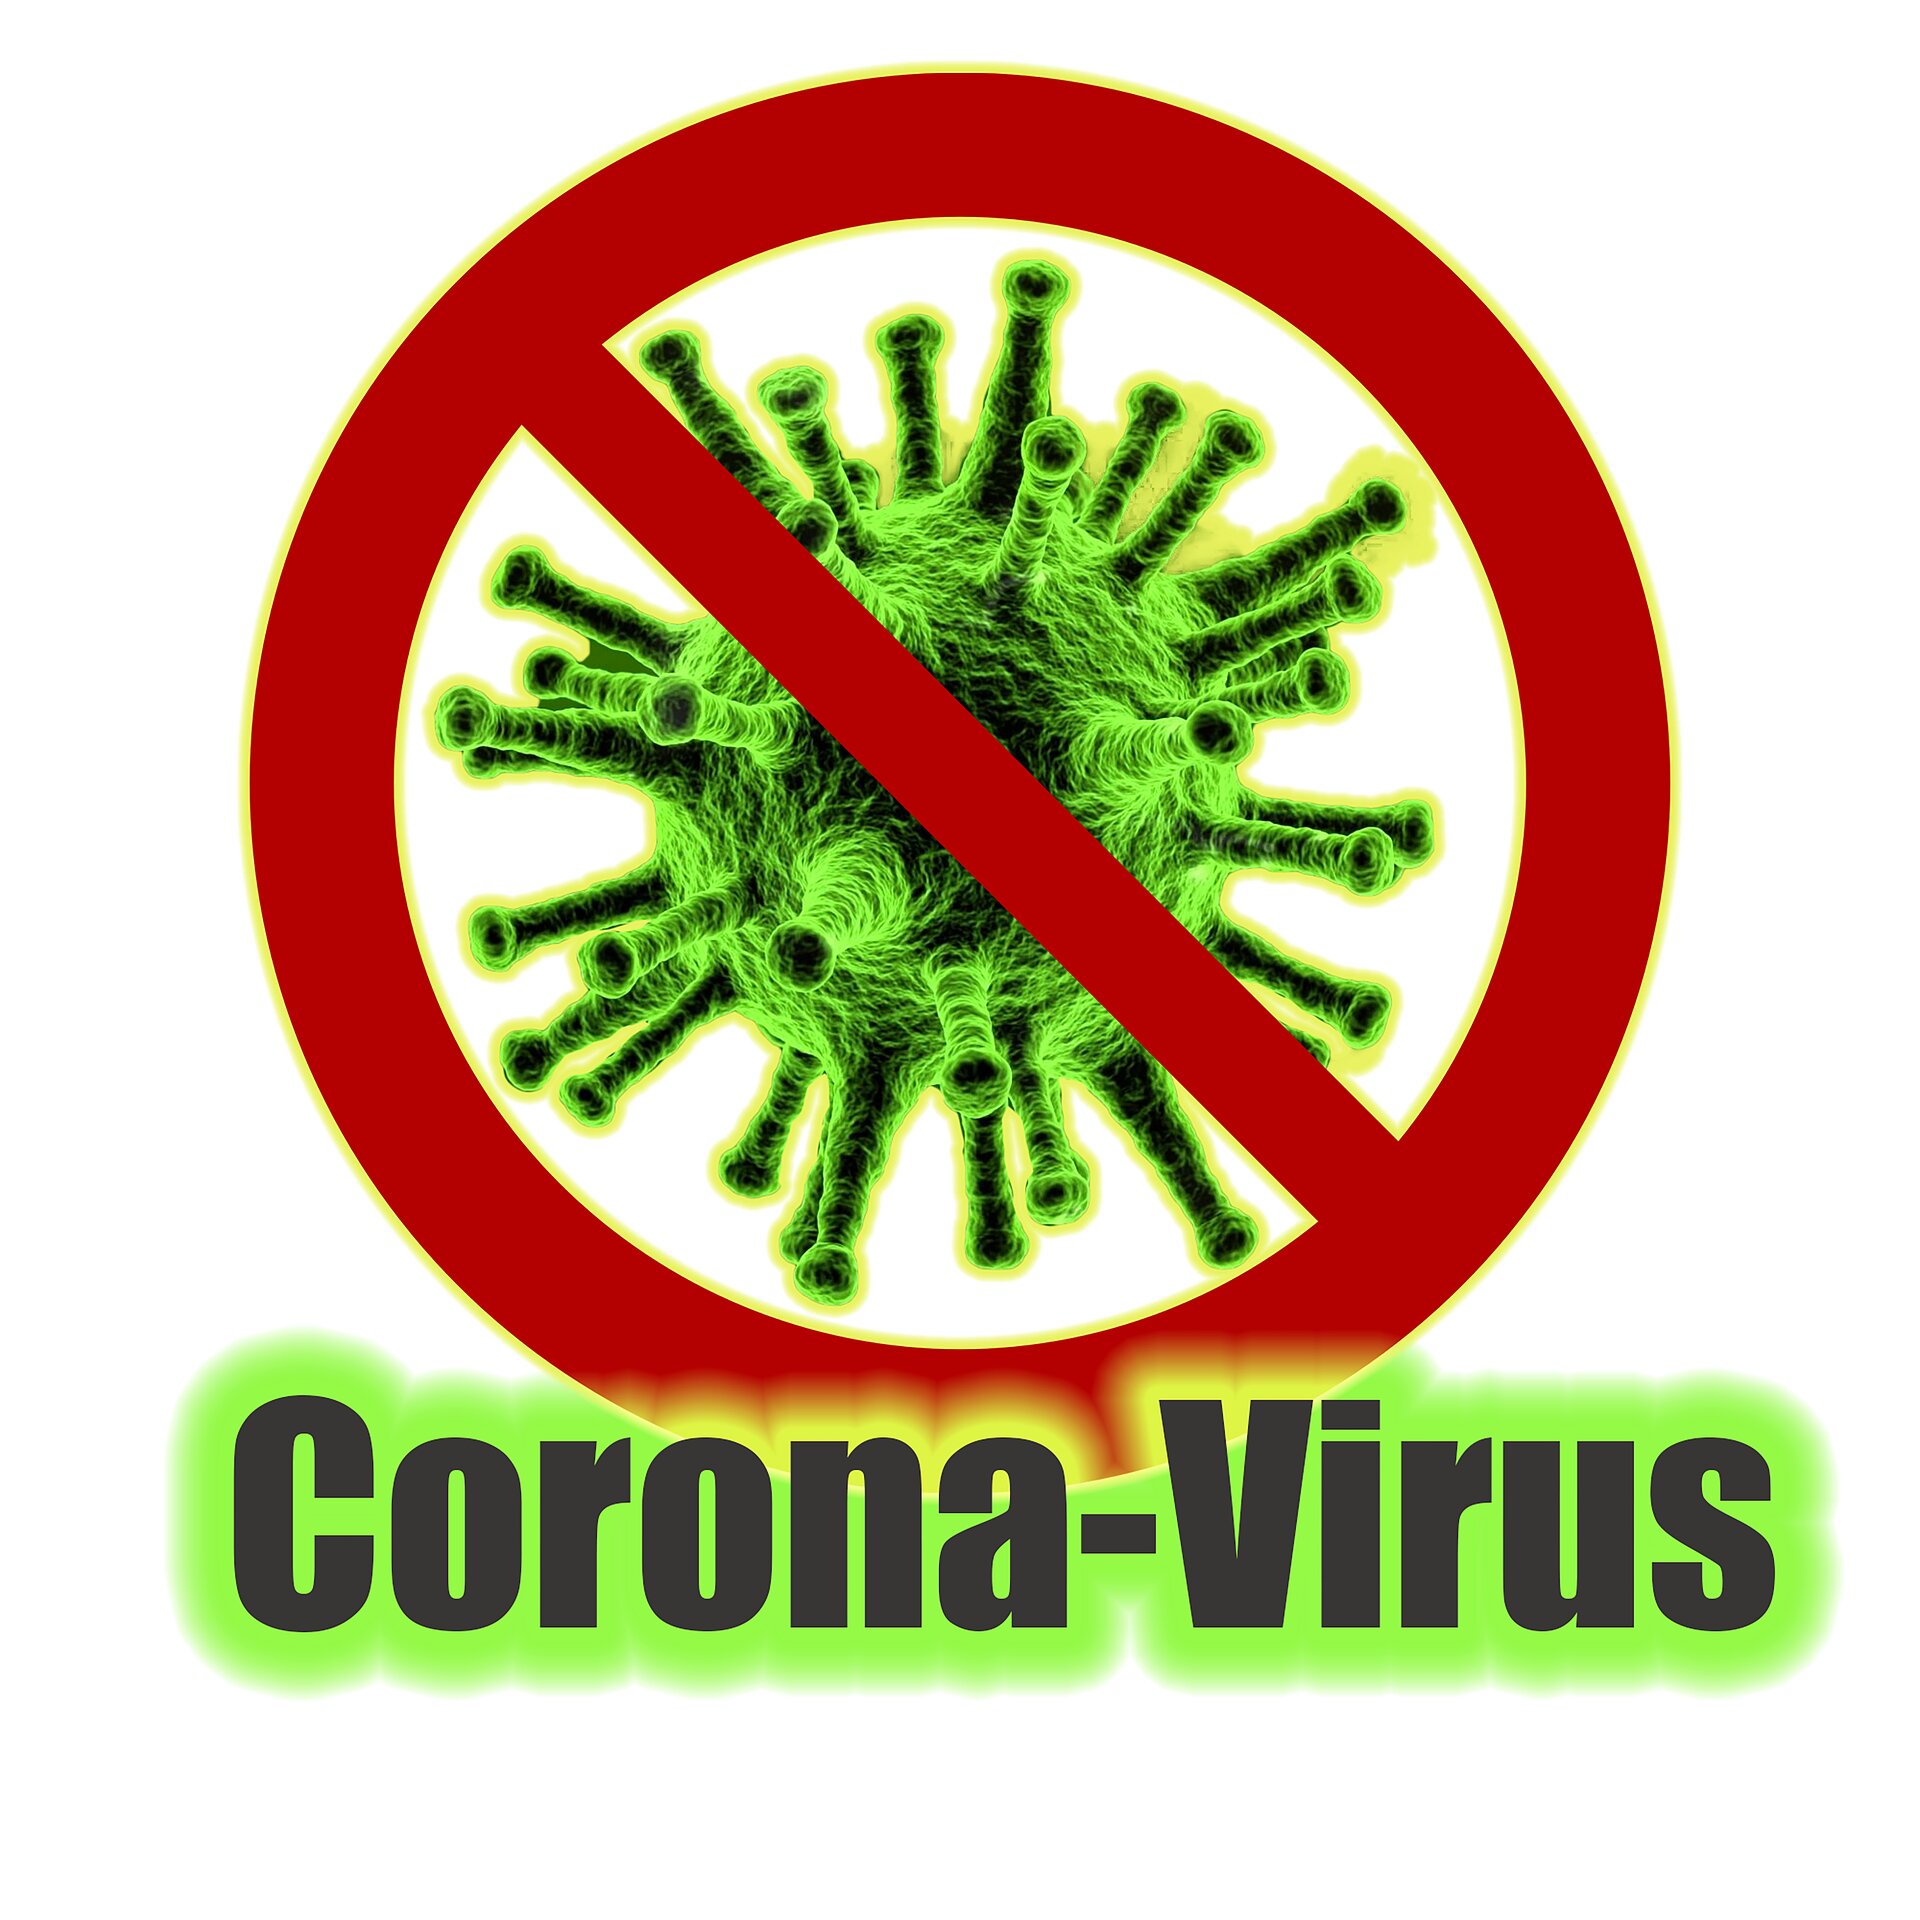 Coronaviros